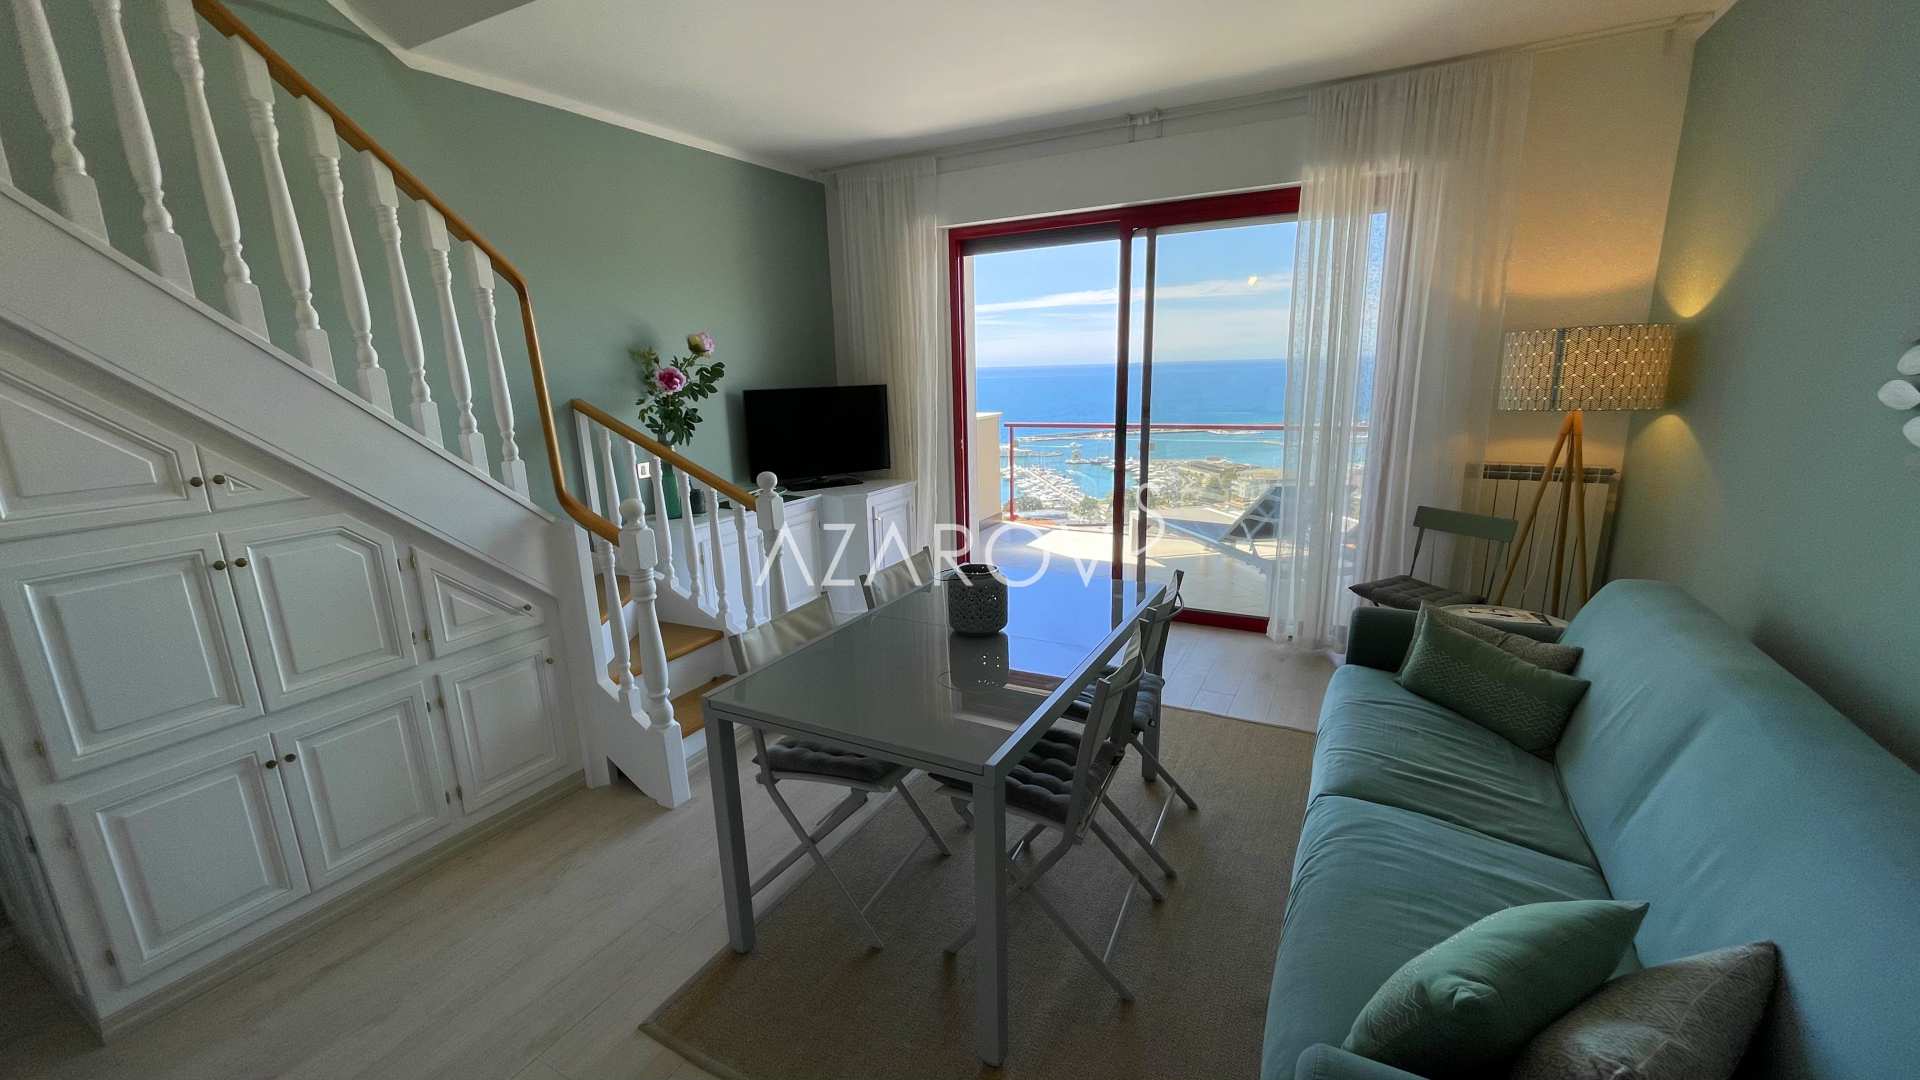 Apartamento de dos dormitorios en San Remo junto al mar